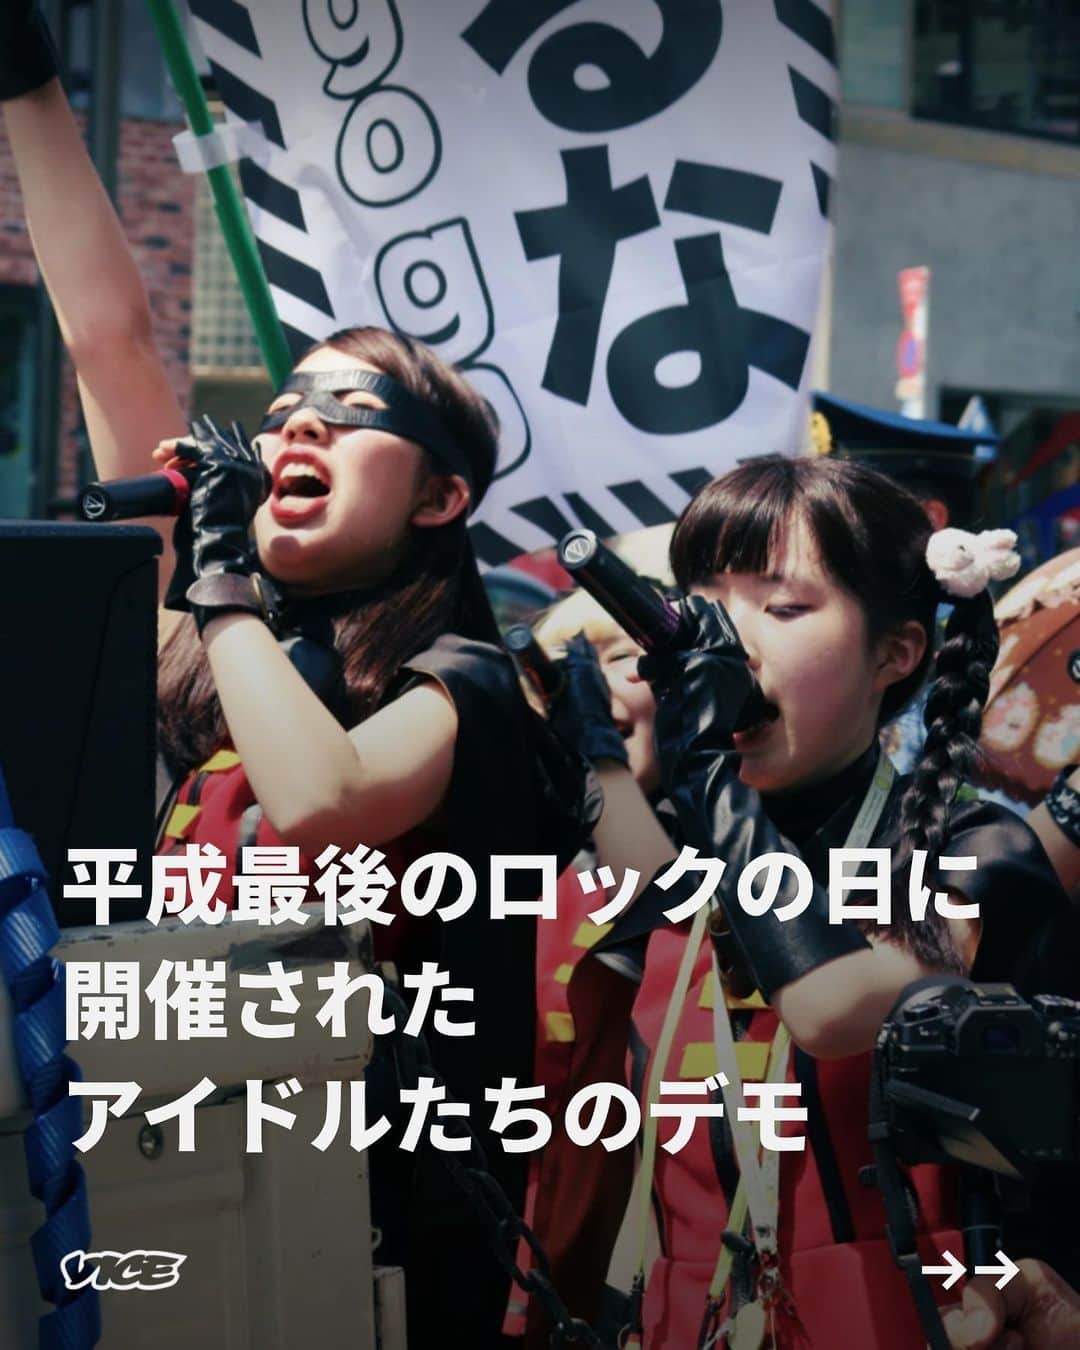 VICE Japanのインスタグラム：「平成30年6月9日、平成最後のロックの日に、 #アイドル たちの #デモ 『フェスボルタ デモ 〜聞け！アイドルの声〜』は開催された。アイドルたちが何を主張するのか、スローガンが明かされないまま迎えた今回のデモは、アイドルがライブをしながら原宿〜表参道間を練り歩き、行進終了後、アイドルたちとの打ち上げがあるという。  日本でデモを開催するには〈集会・集団示威運動許可申請書〉にデモの目的や参加人数などを記載し、デモの72時間前に、警察署を通して公安の許可を得なければならない。さらに〈サウンドデモ〉とよばれる、今回のようなライブ形式のデモでは、スピーカーを積んだサウンドカーを用意する必要もある。初めてのデモにしては難易度が高く、集団示威運動とライブイベントの狭間にあるような今回の行進を、主宰した運営陣はどのように実現し、〈デモ〉をどのように捉えているのだろうか。  記事詳細は @vicejapan プロフィールのリンクから  #vicejapan #vice #ヴァイスジャパン #嫌なことを嫌と言えたら」